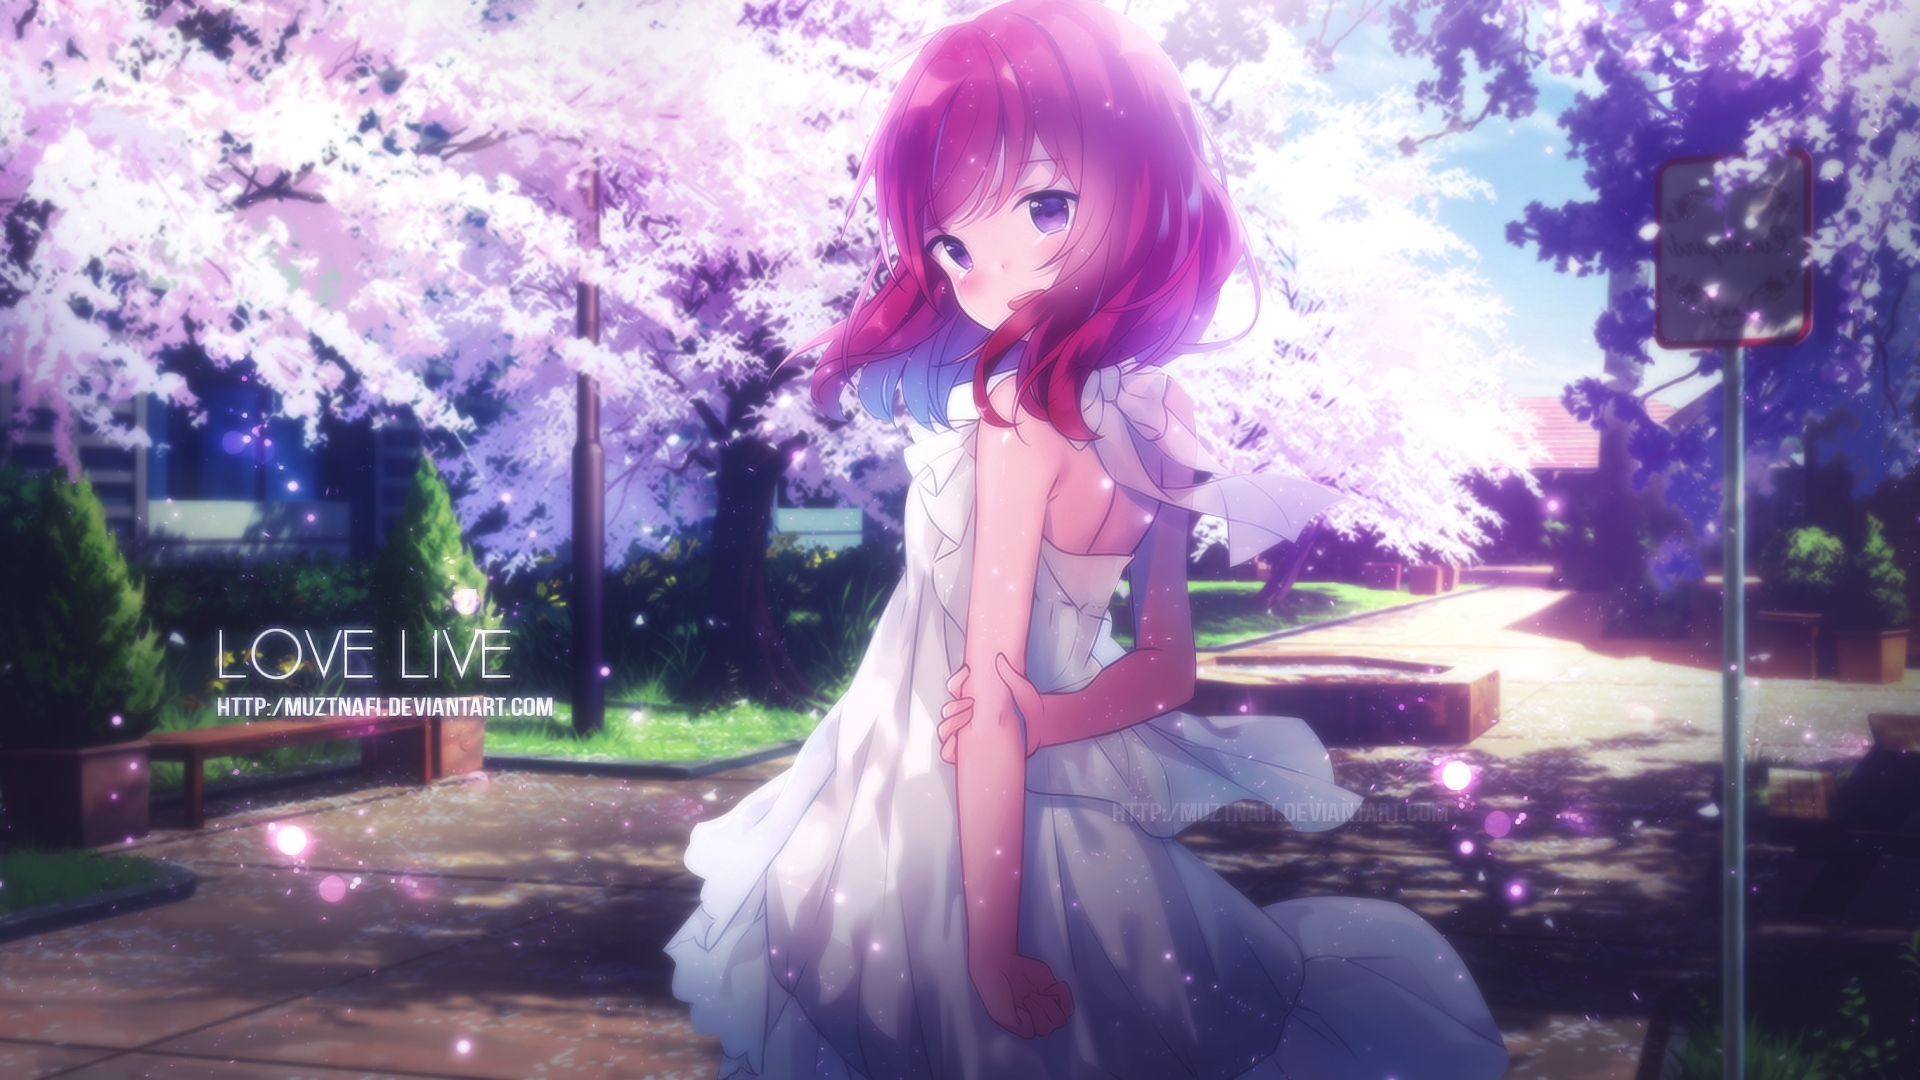 Descarga gratuita de fondo de pantalla para móvil de Animado, Maki Nishikino, ¡ama Vive!.